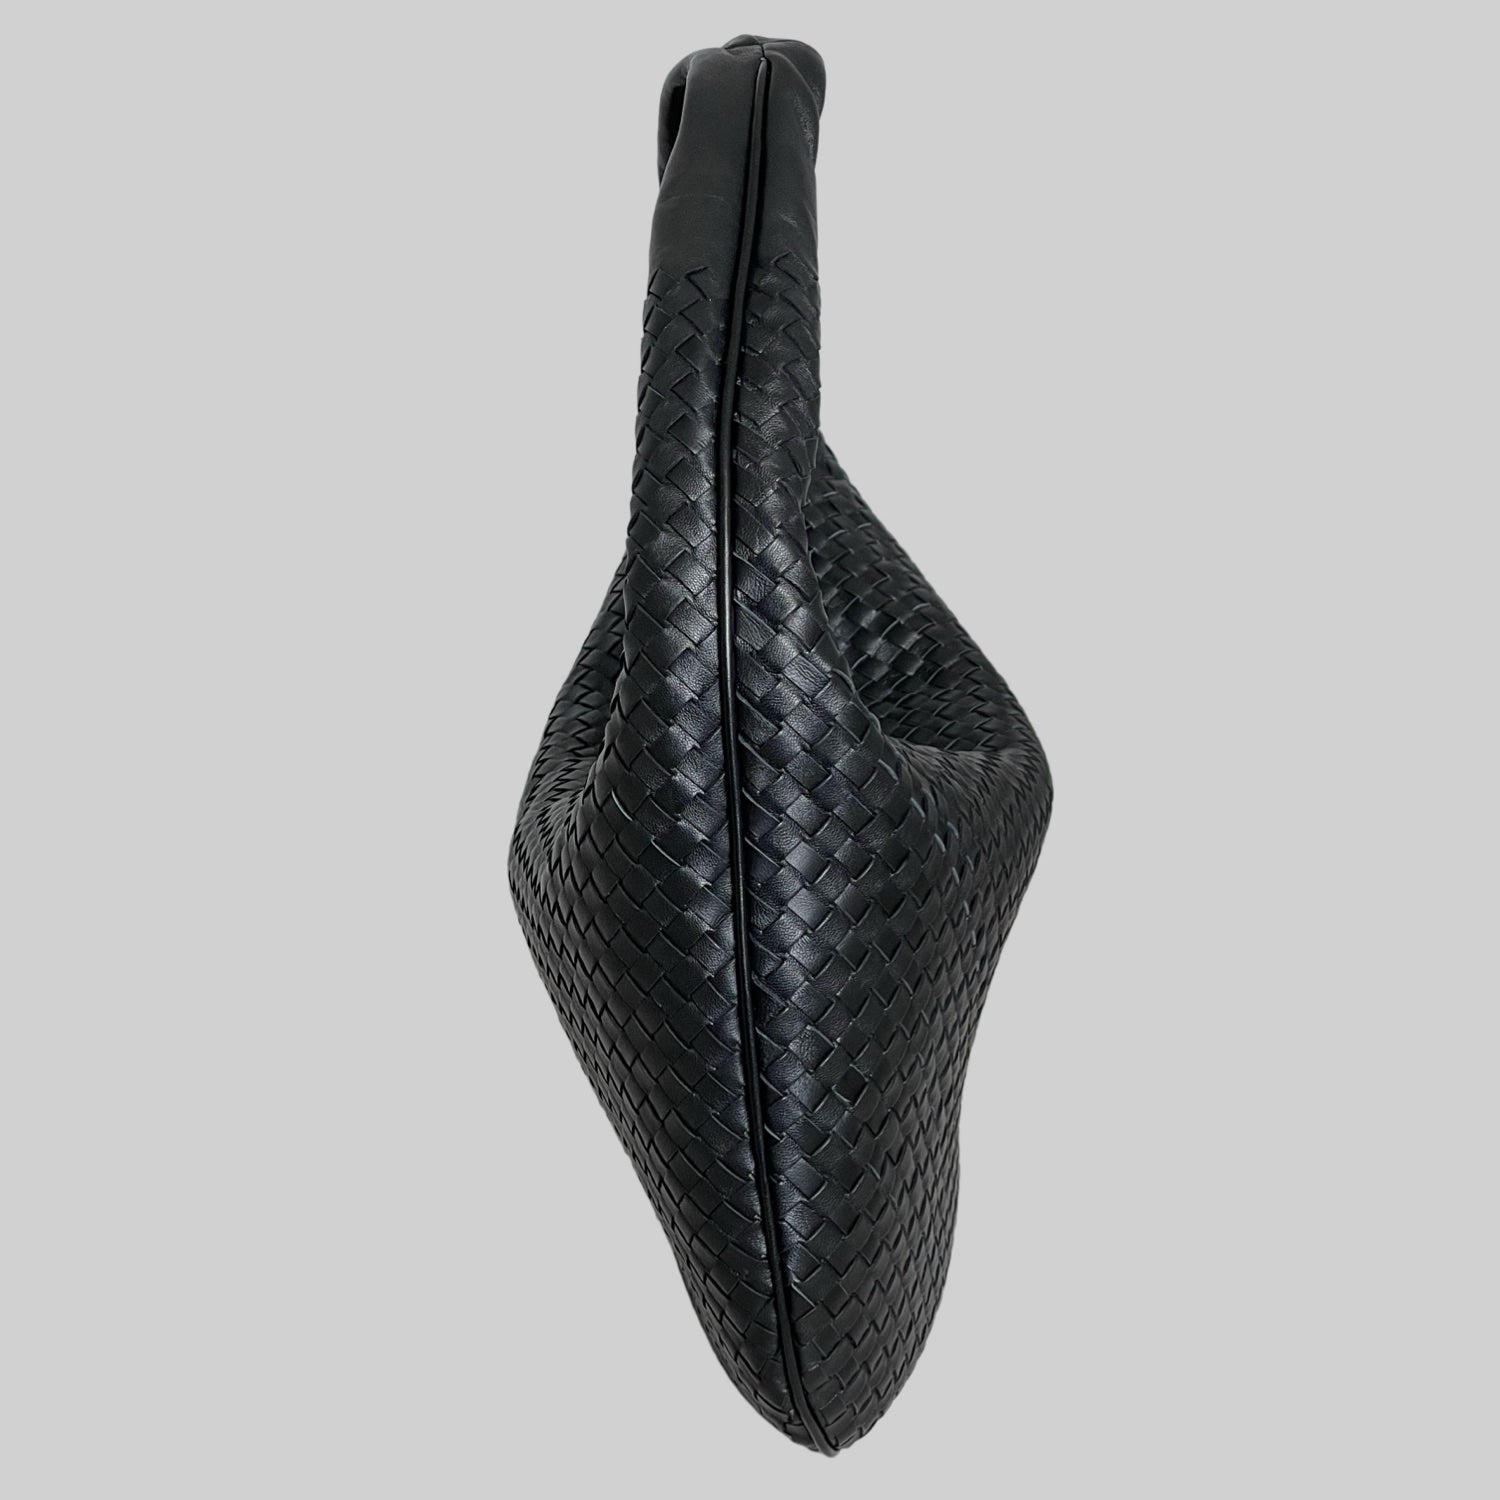 Sideprofil av Ribichini Isola-vesken i sort, som viser det unike flettede lammeskinn og den slanke silhuetten.